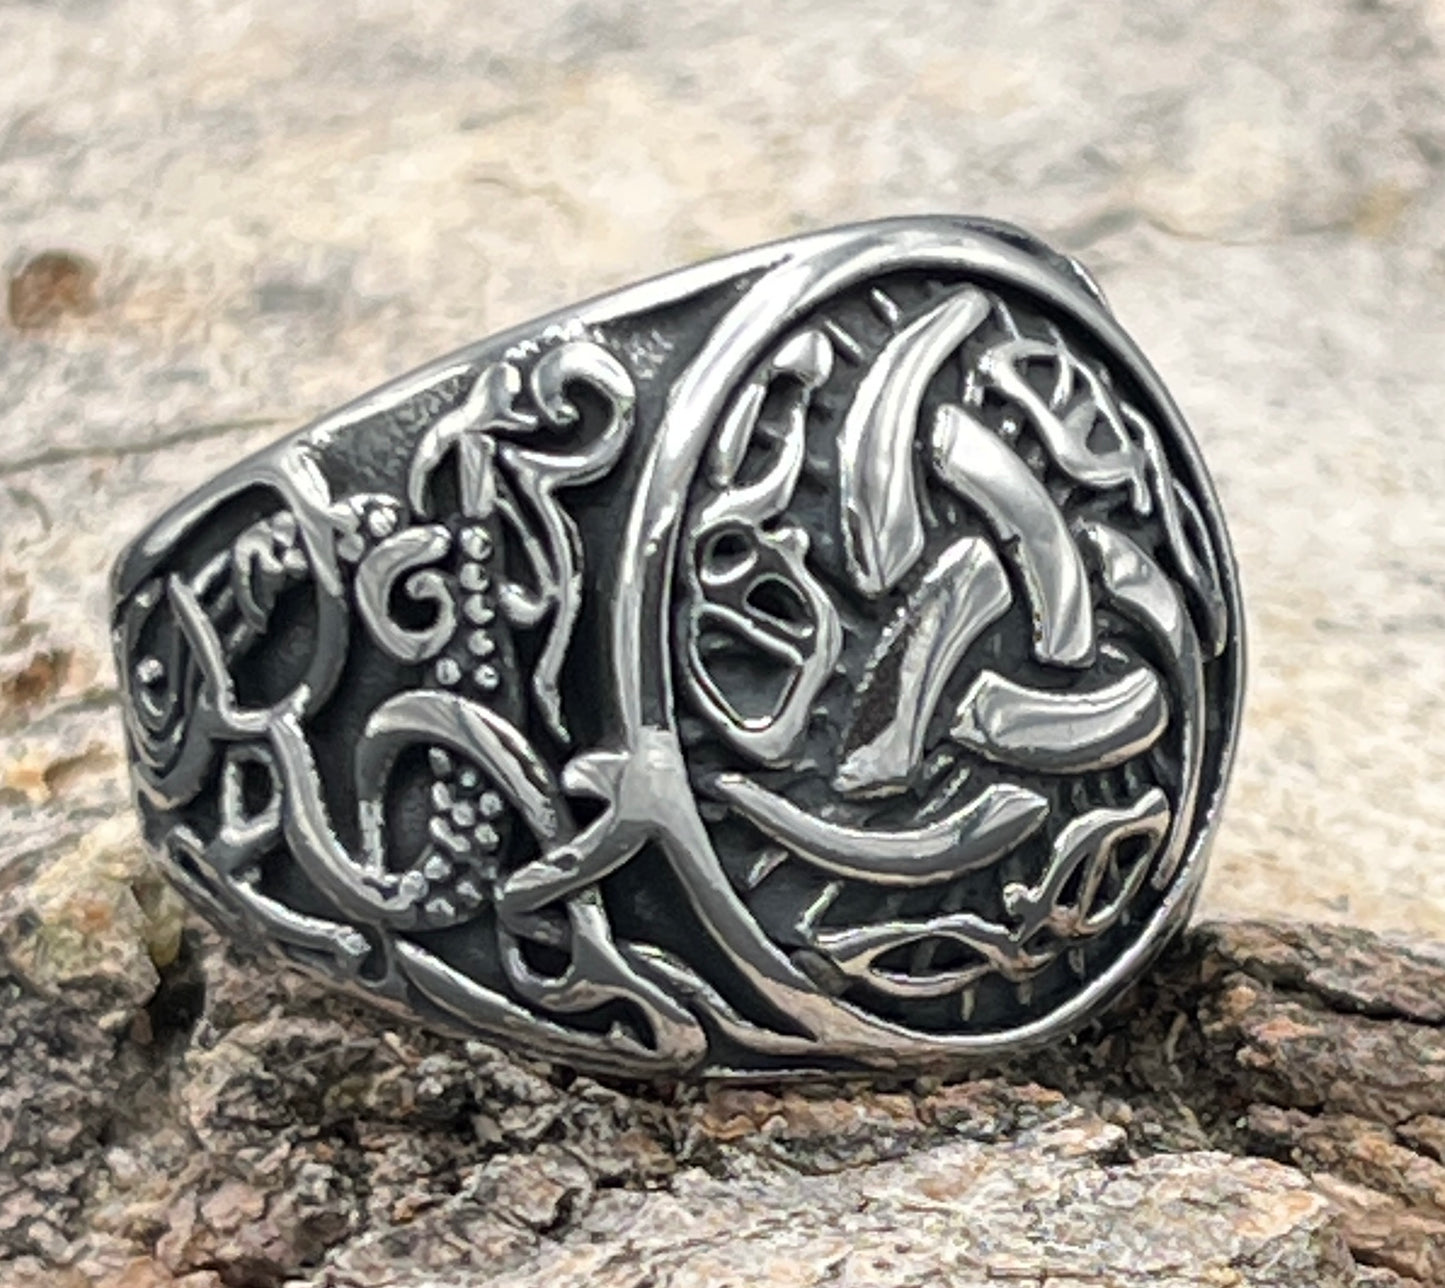 Ring - Odin's Horns